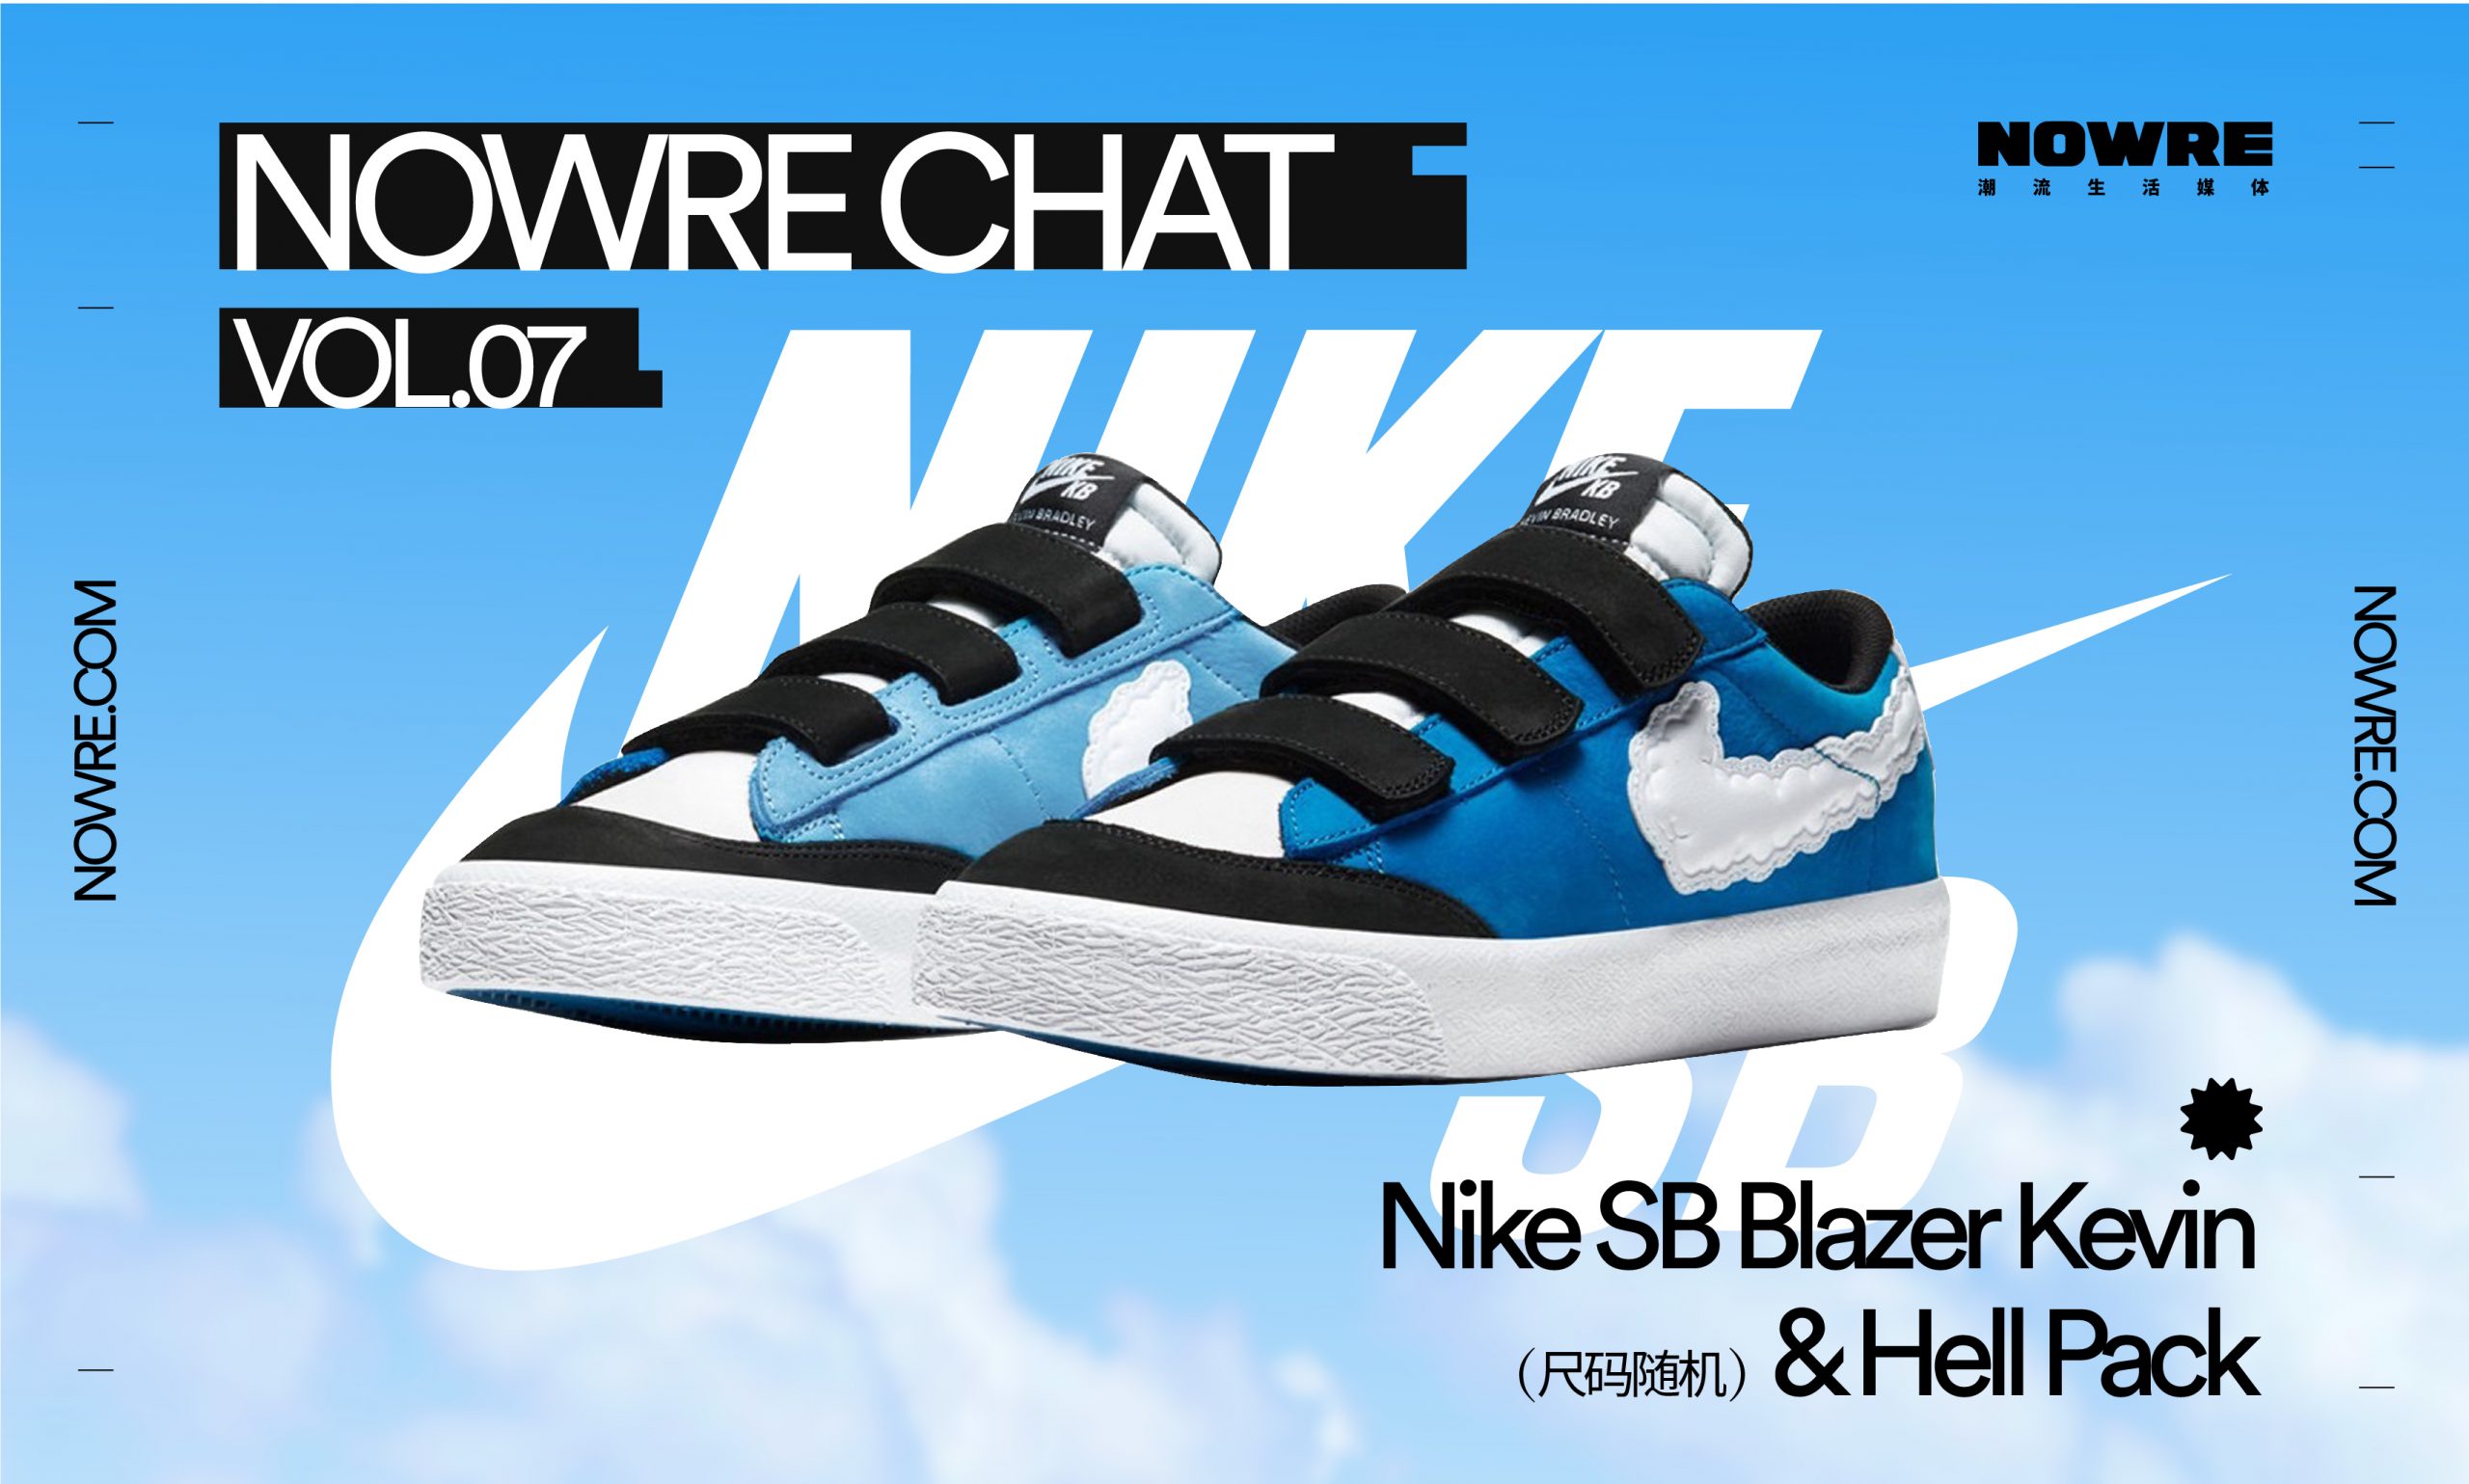 回答关于快时尚的一道问题，免费获得 Nike SB Blazer